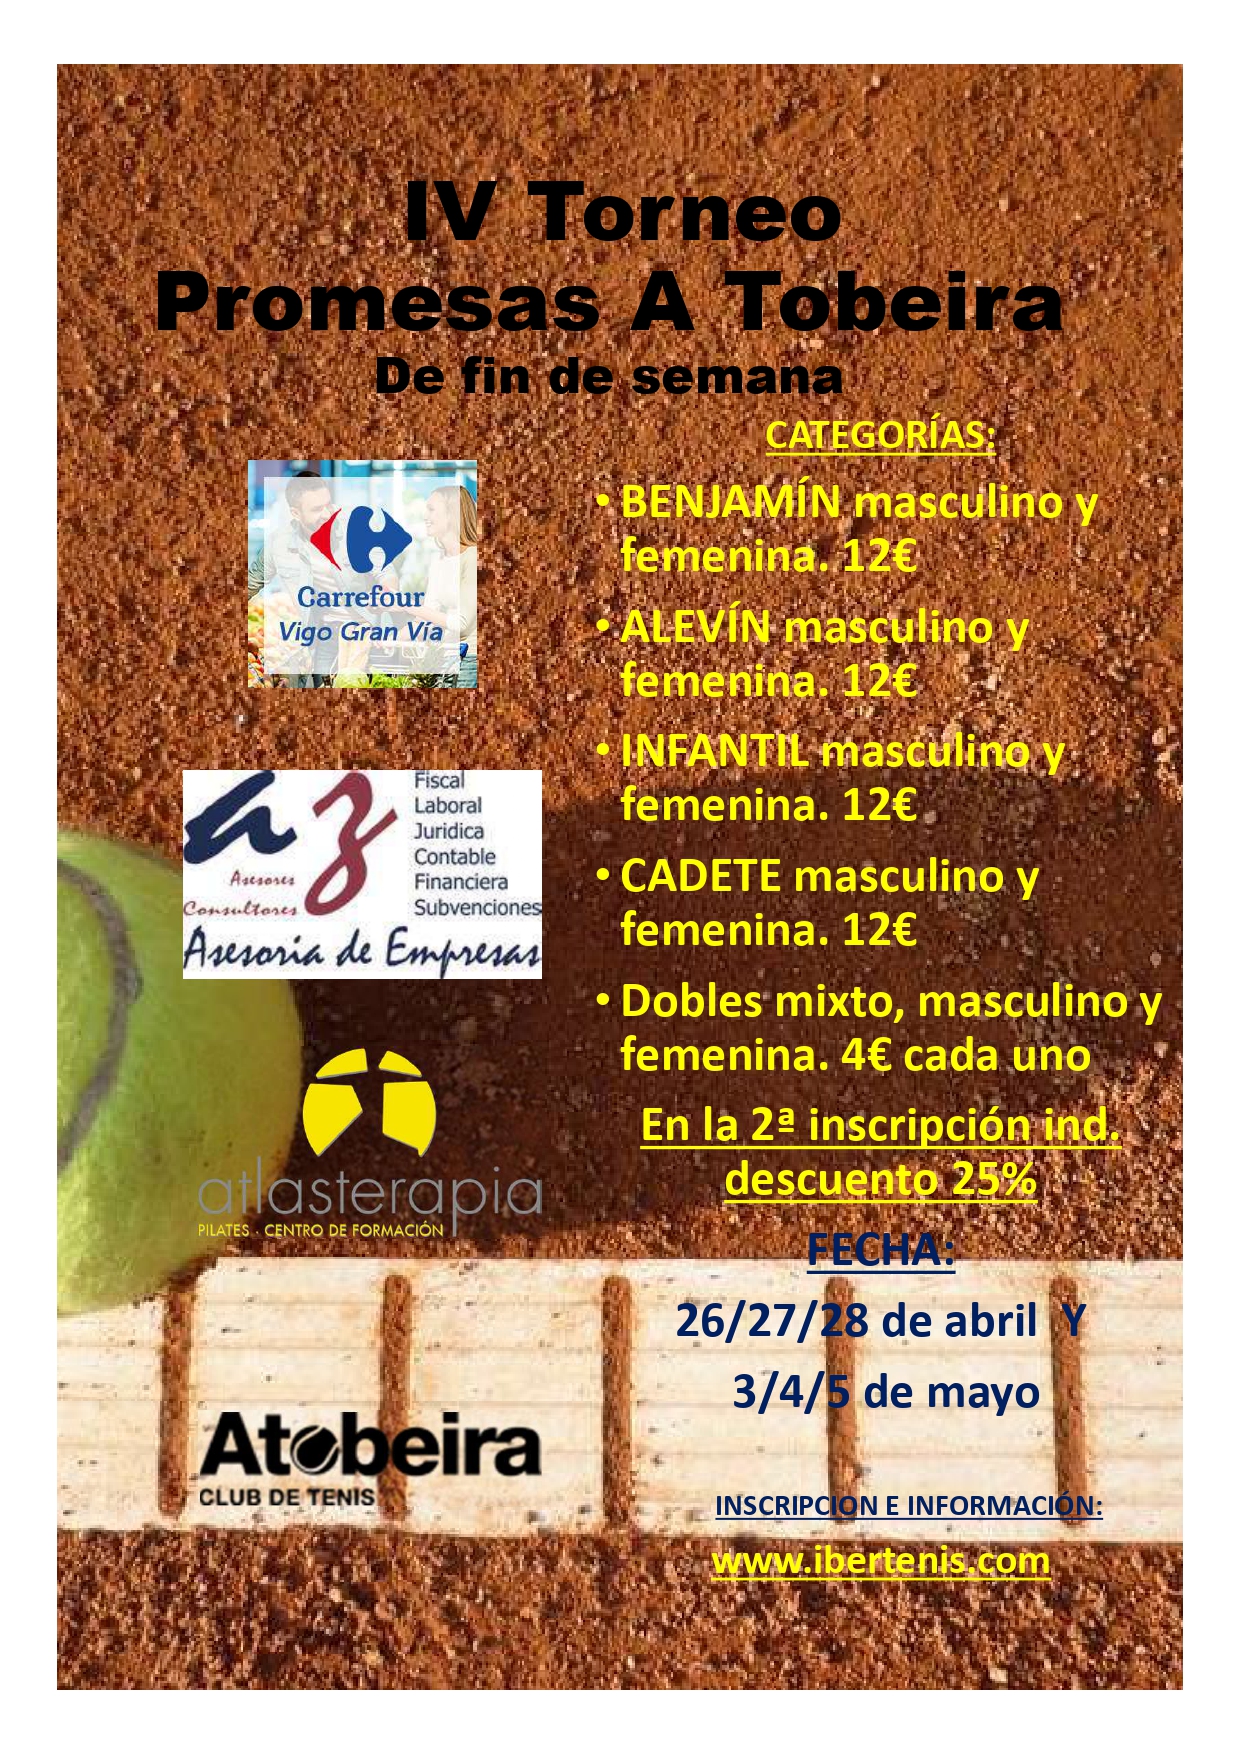 Cartel del IV Torneos Promesas A Tobeira - de fin de semana